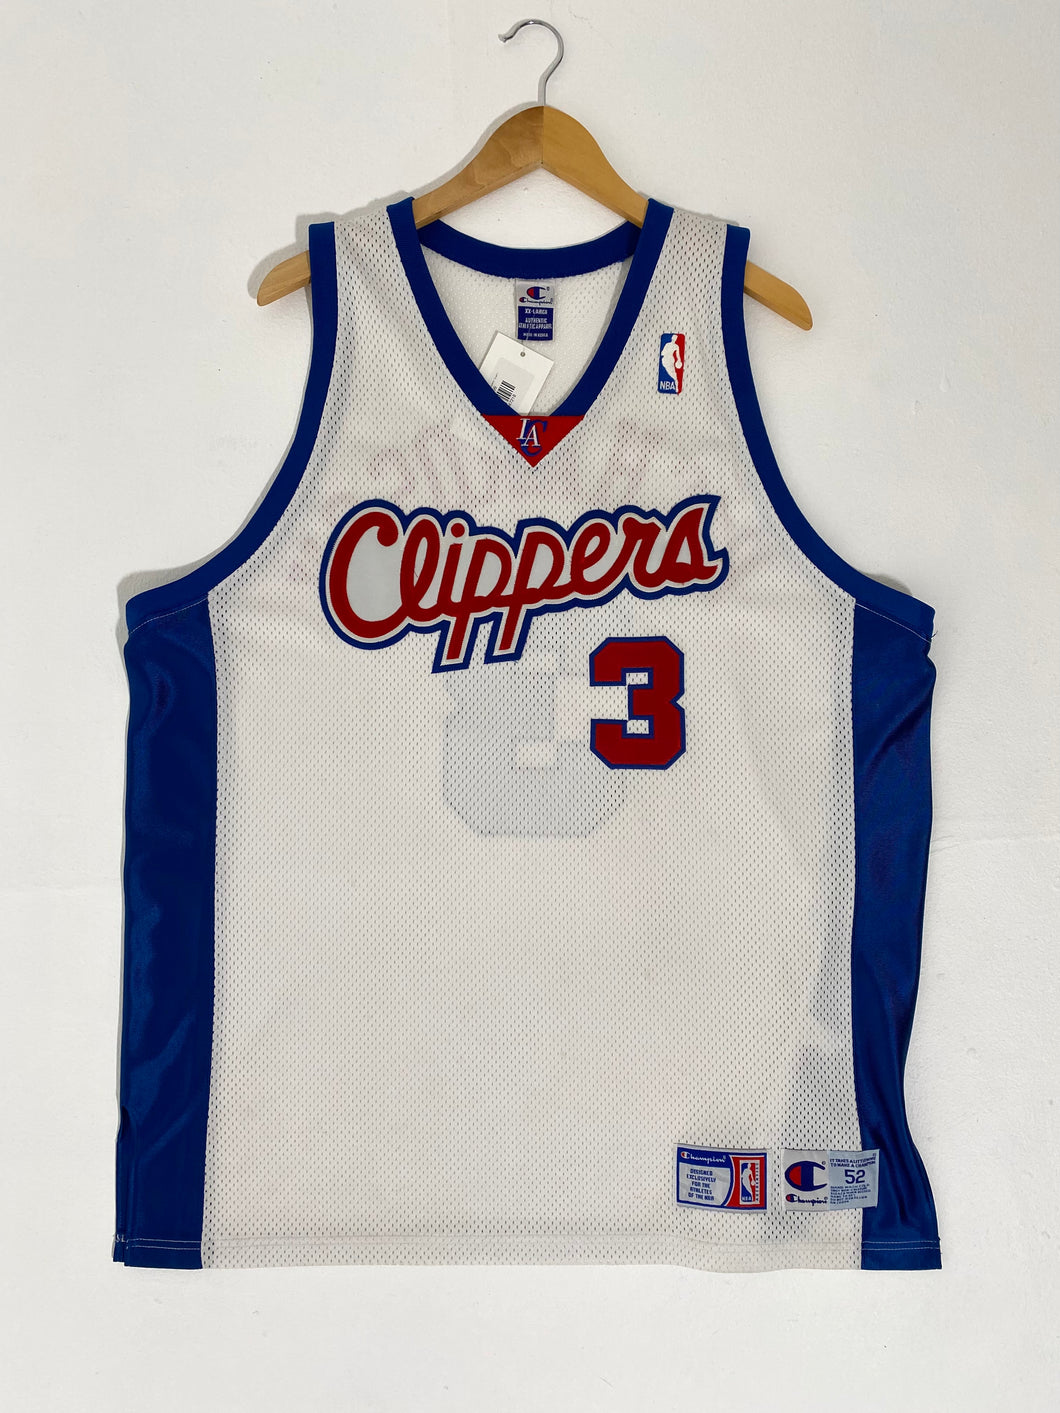 LA Clippers Jerseys, Clippers Jersey, LA Clippers Uniforms